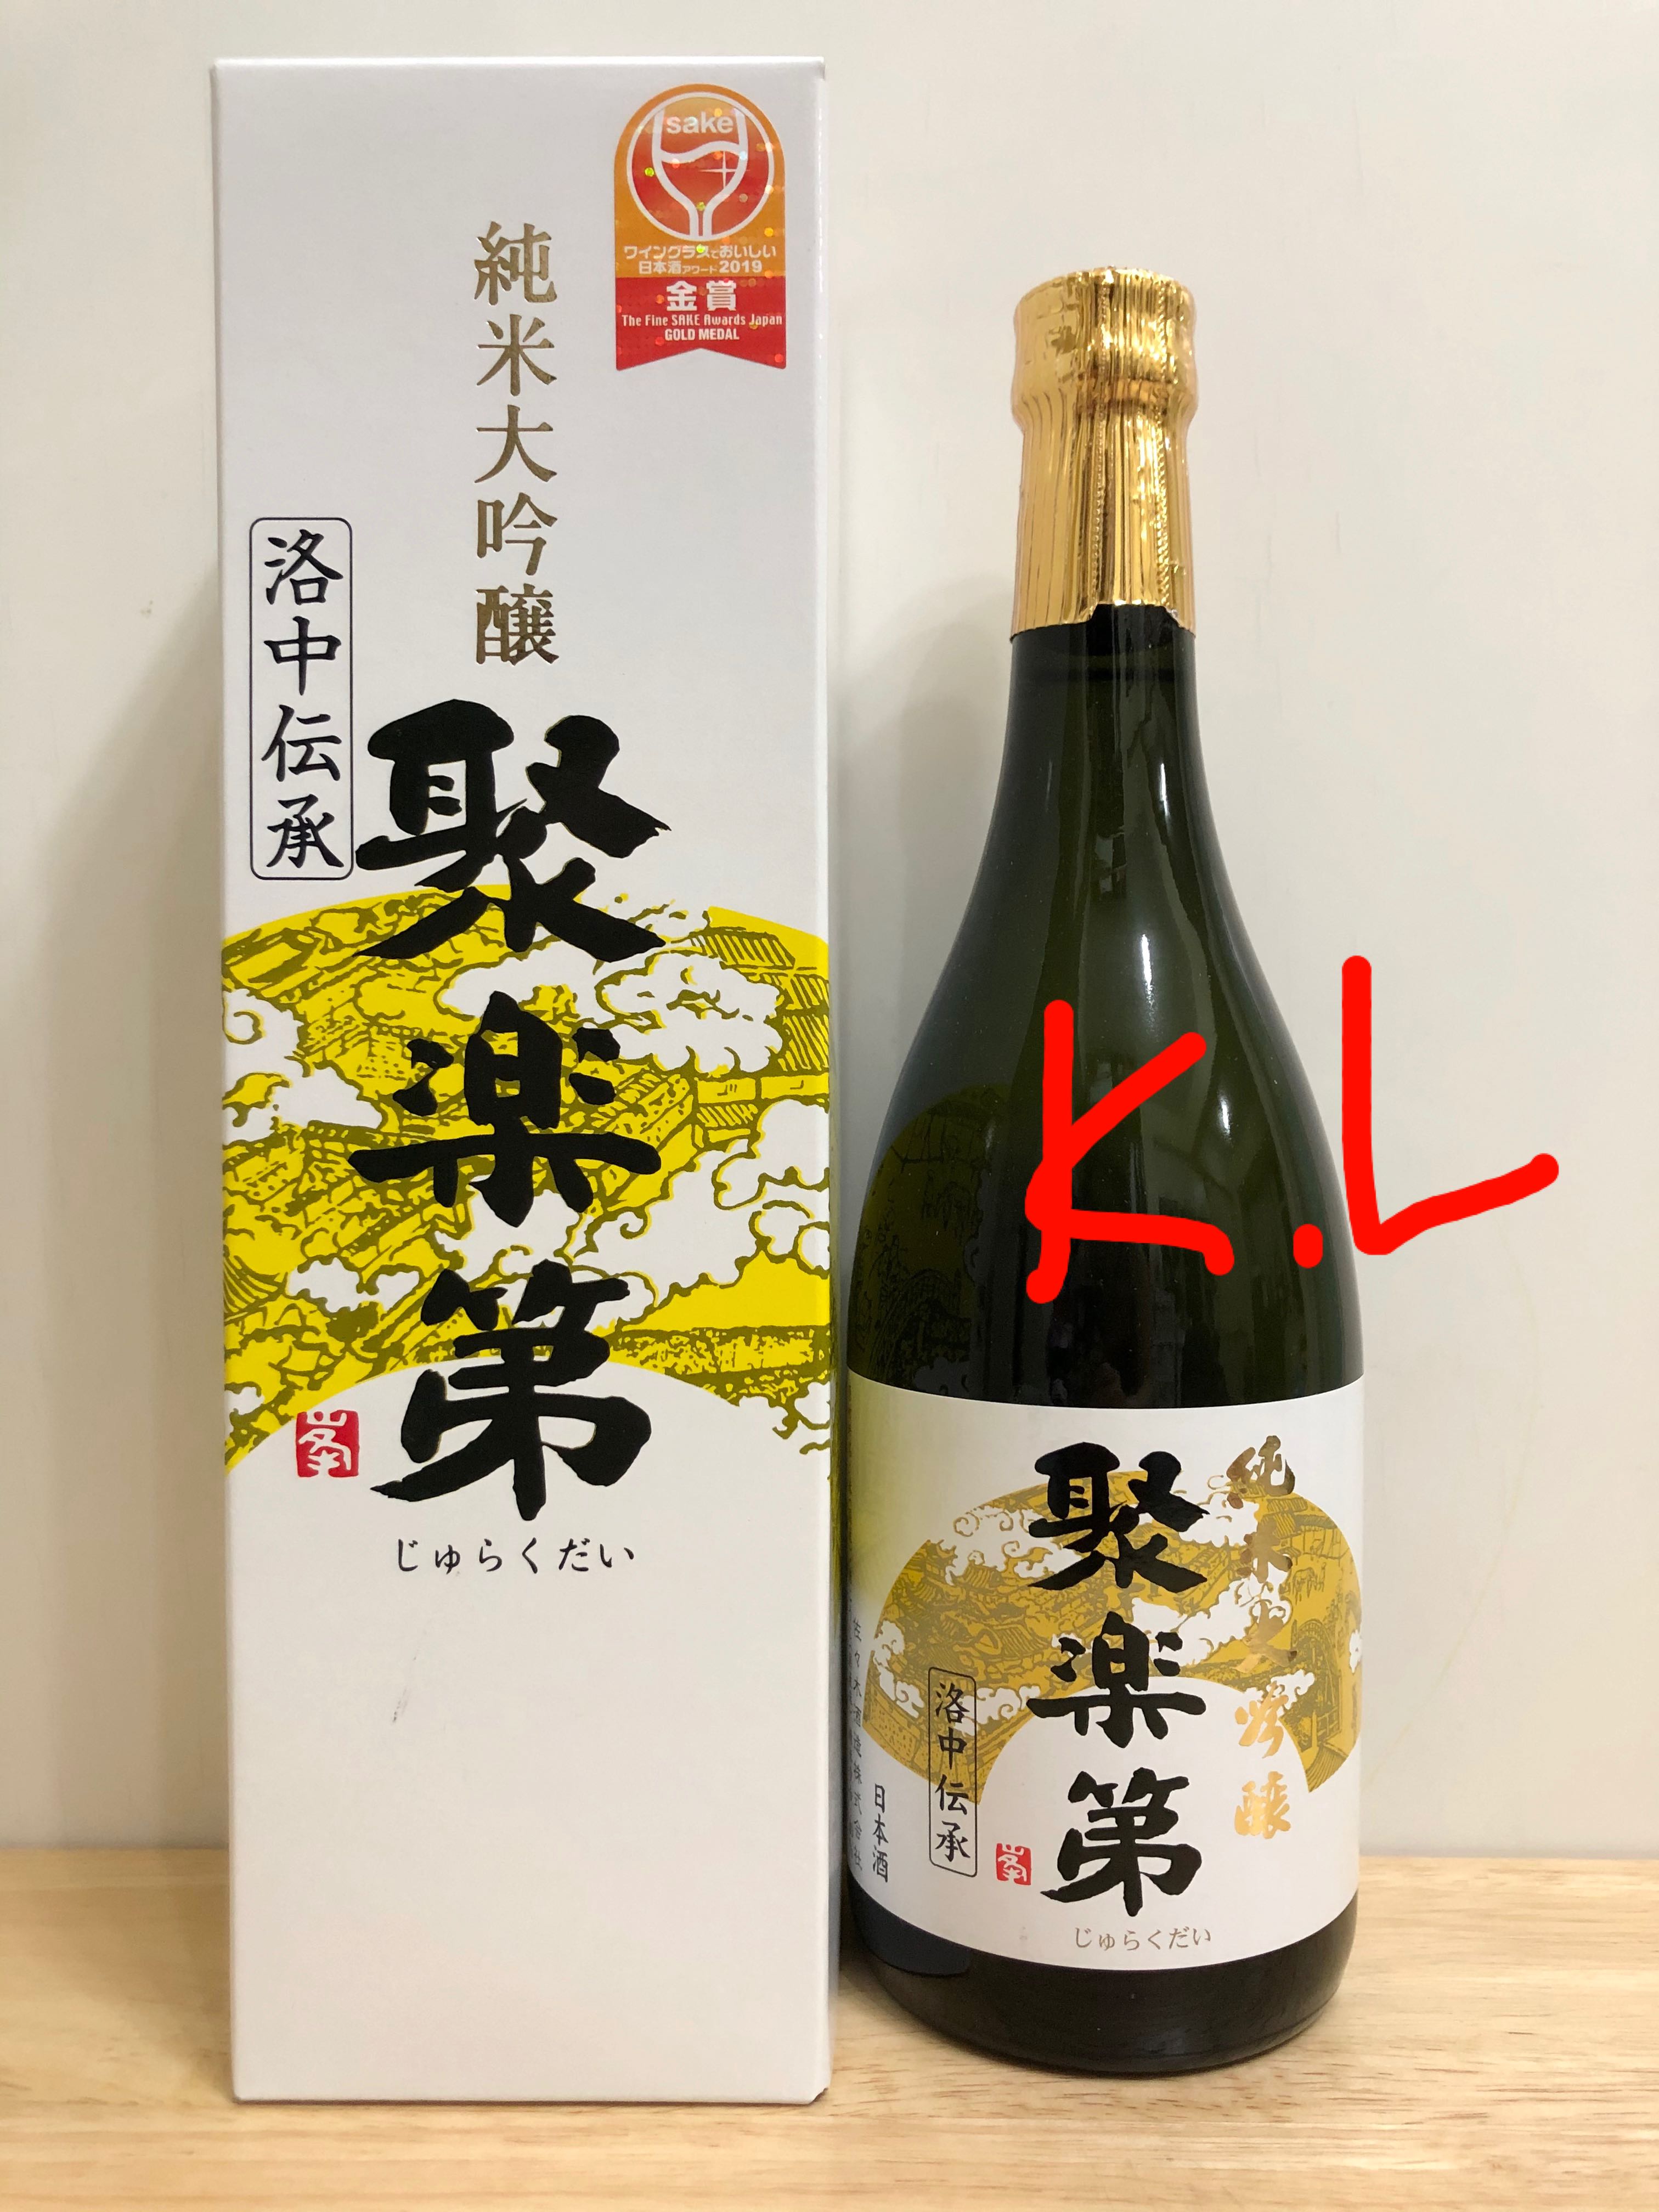 久保田萬壽長期熟成酒古酒10年物1800ml-